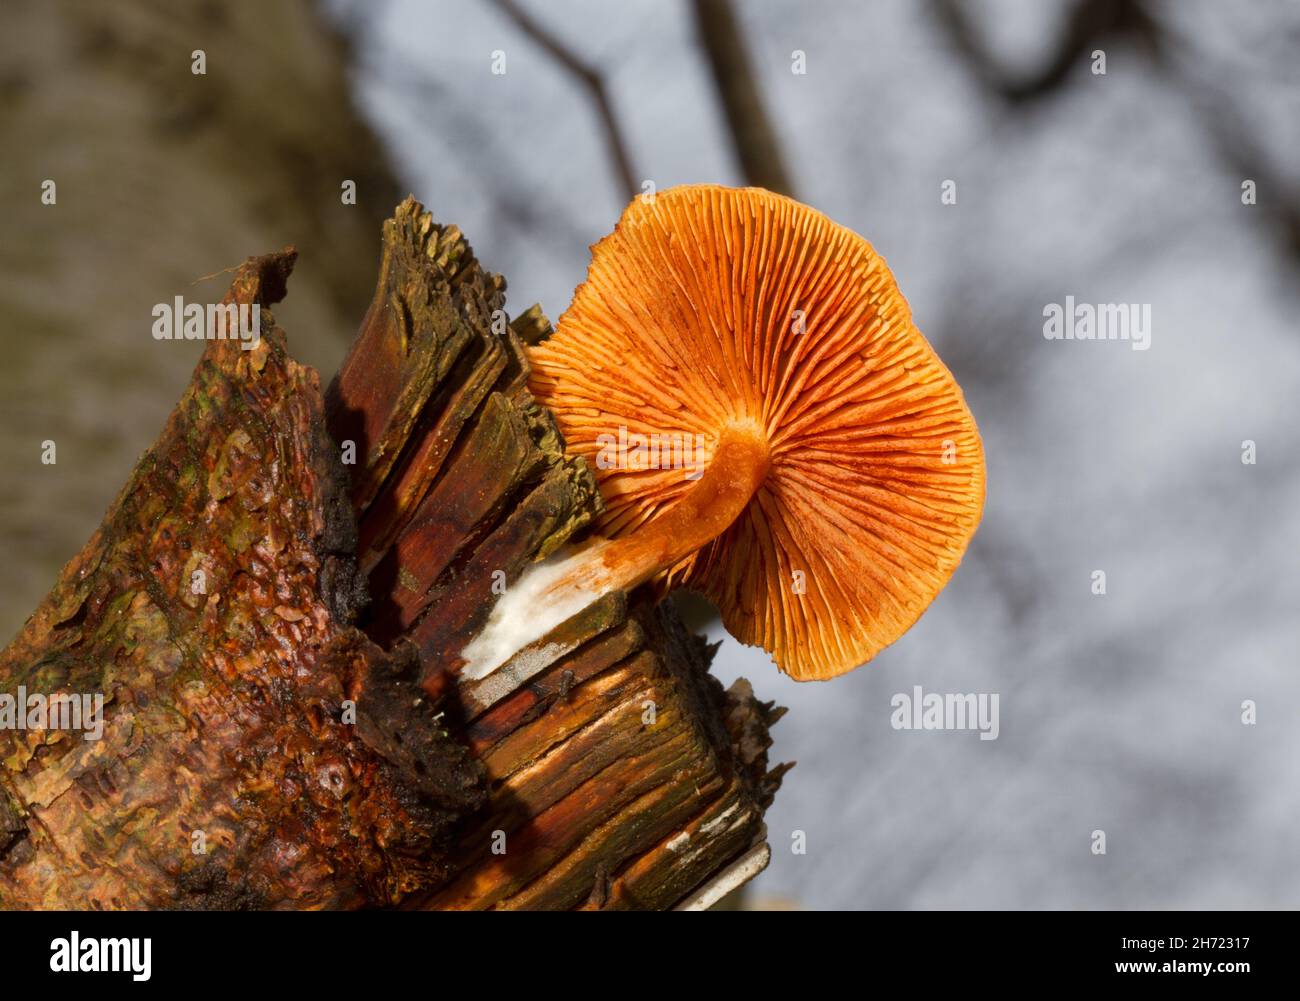 Champignon rustgill squameux qui croît sur la branche rotante, vu d'en dessous Banque D'Images